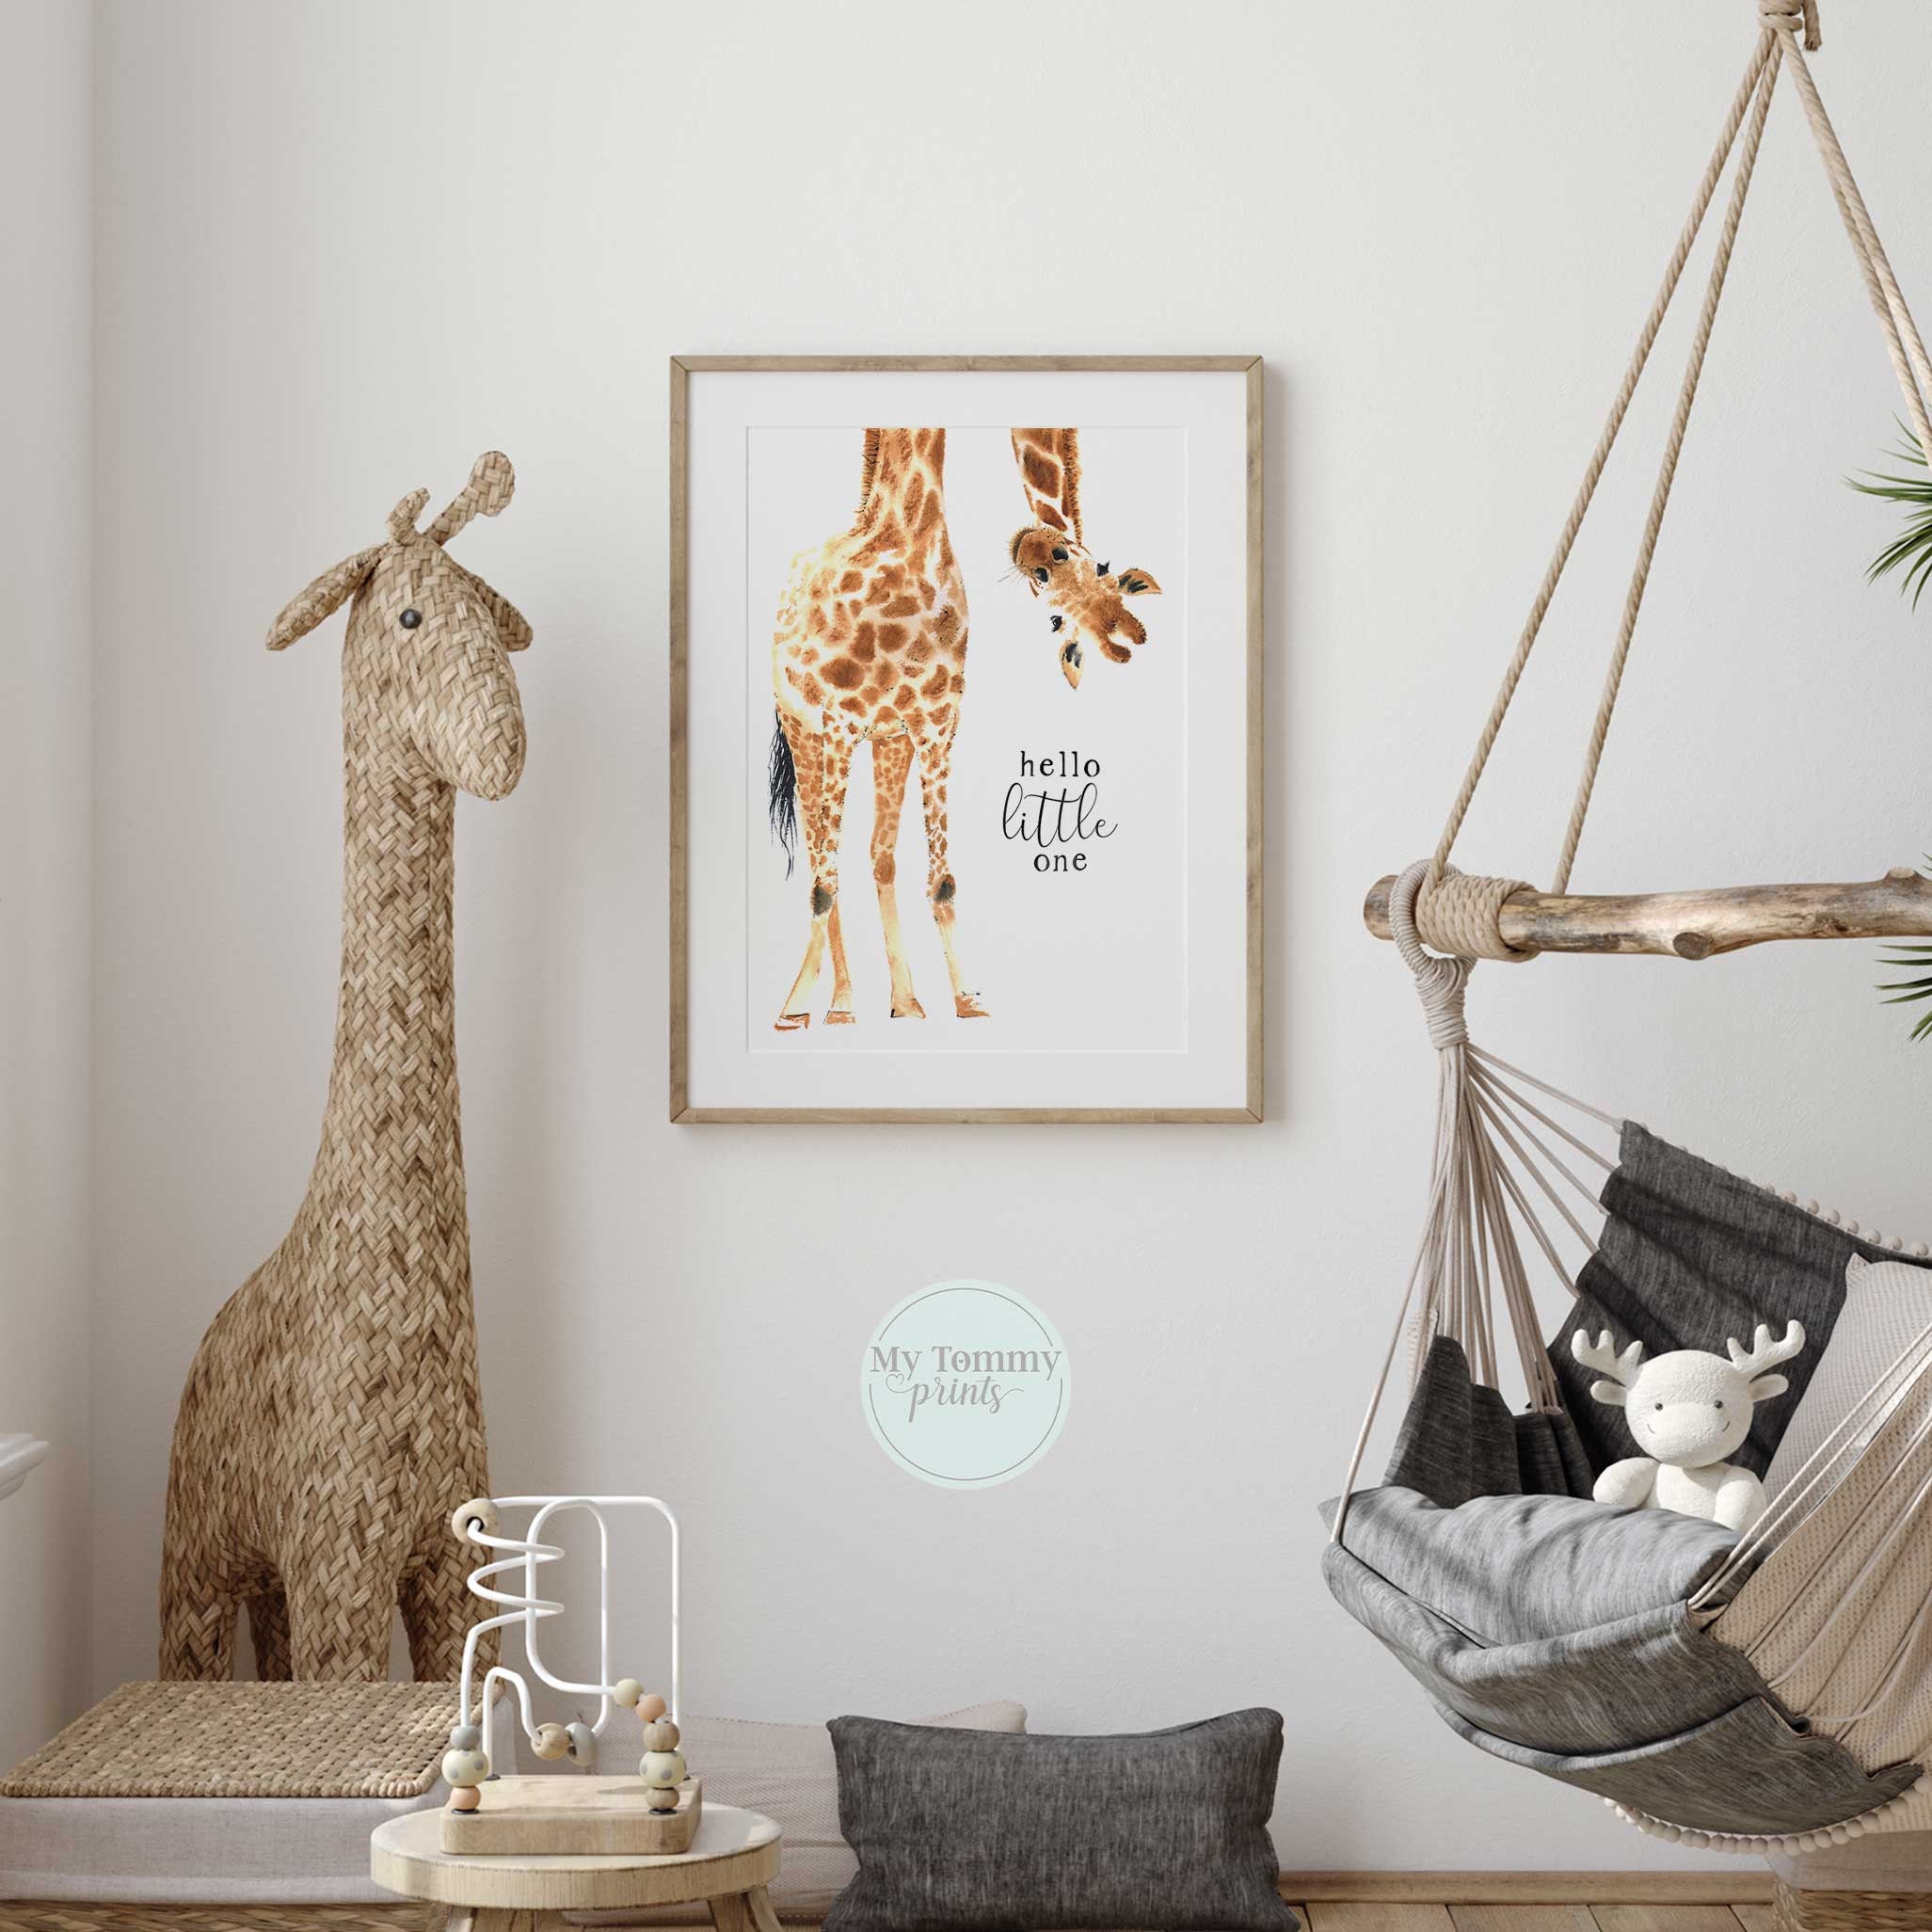 Hallo Print Tier Art Geschenke Little Wandkunst Neue Safari Wall Schlafzimmer Kinderzimmer Thema Neutral Decor Gender One Dekor Tier Giraffe Baby